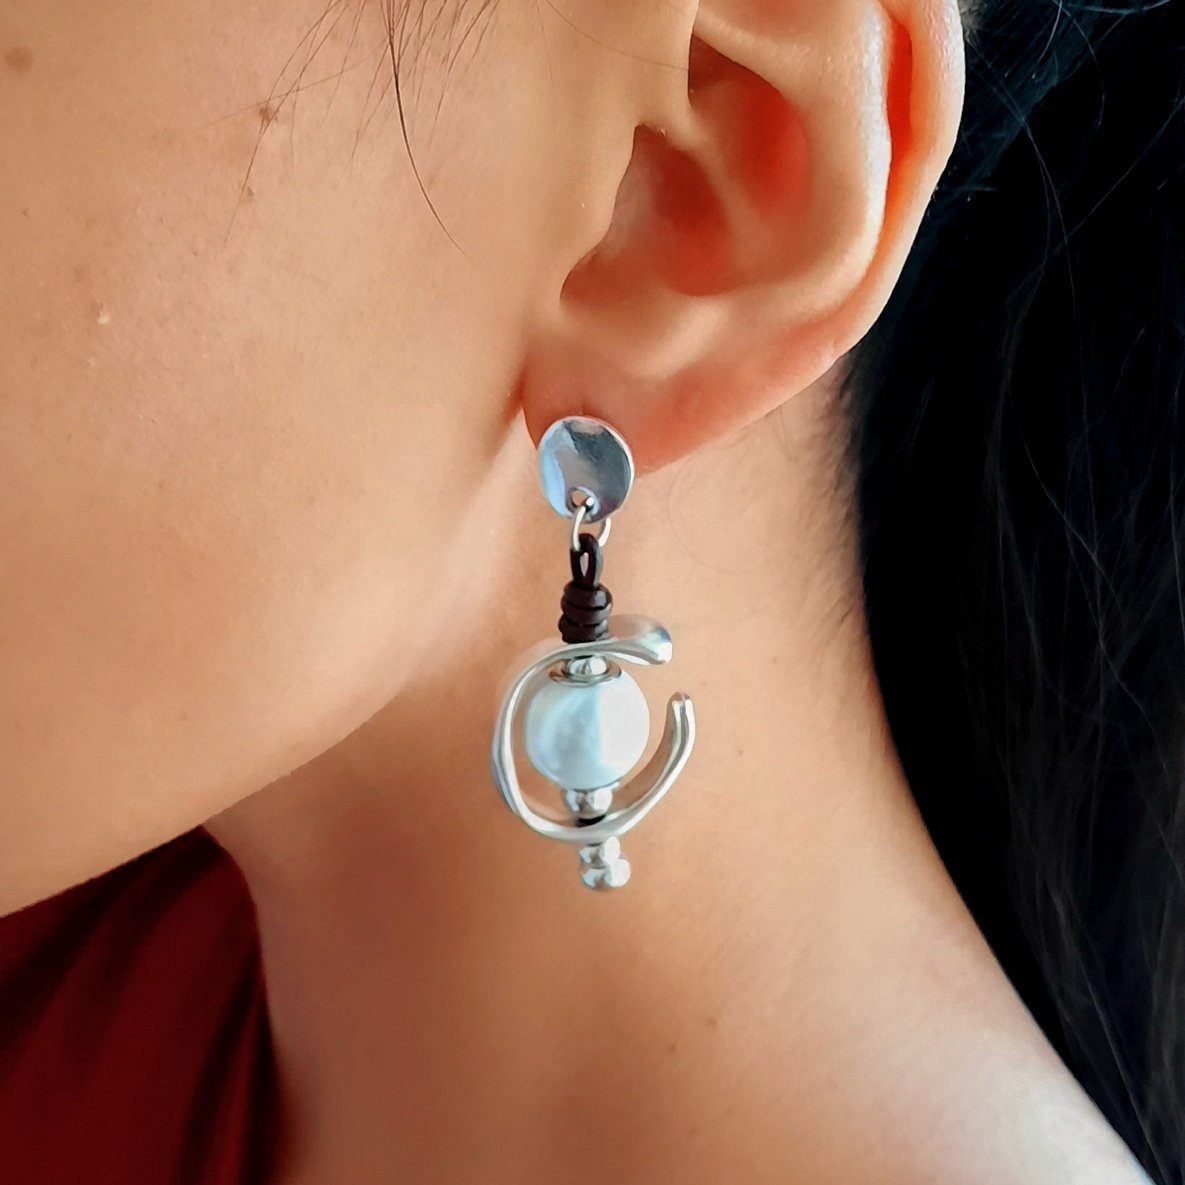 Weisse Perle Lange Ohrringe für Frauen - Marina Ohrringe KOOMPLIMENTS